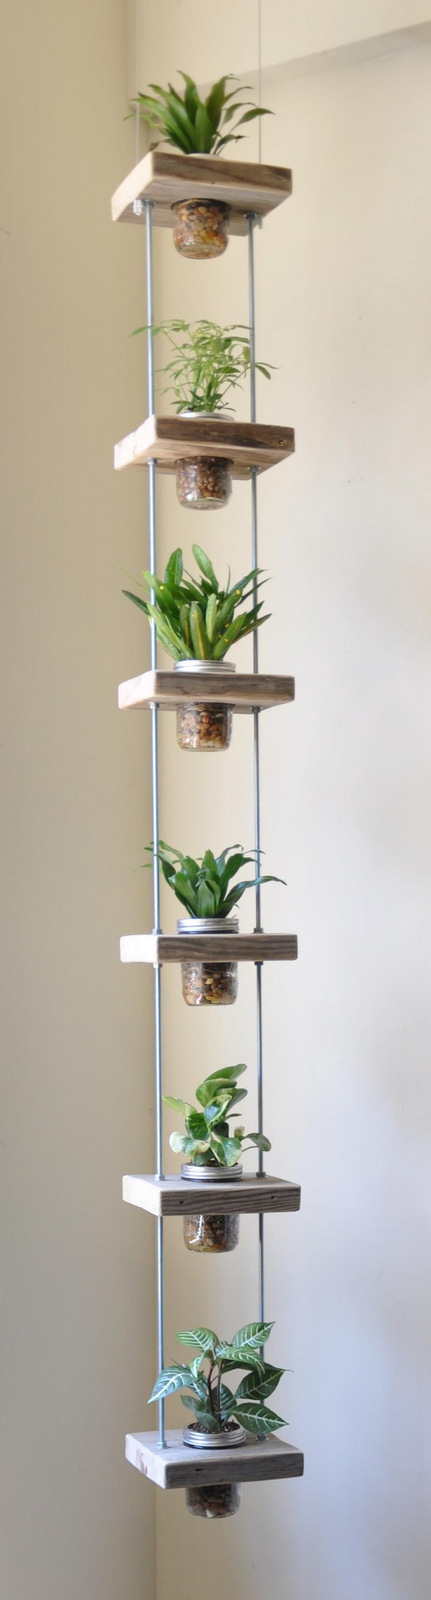 hanging mason jar vertical planter